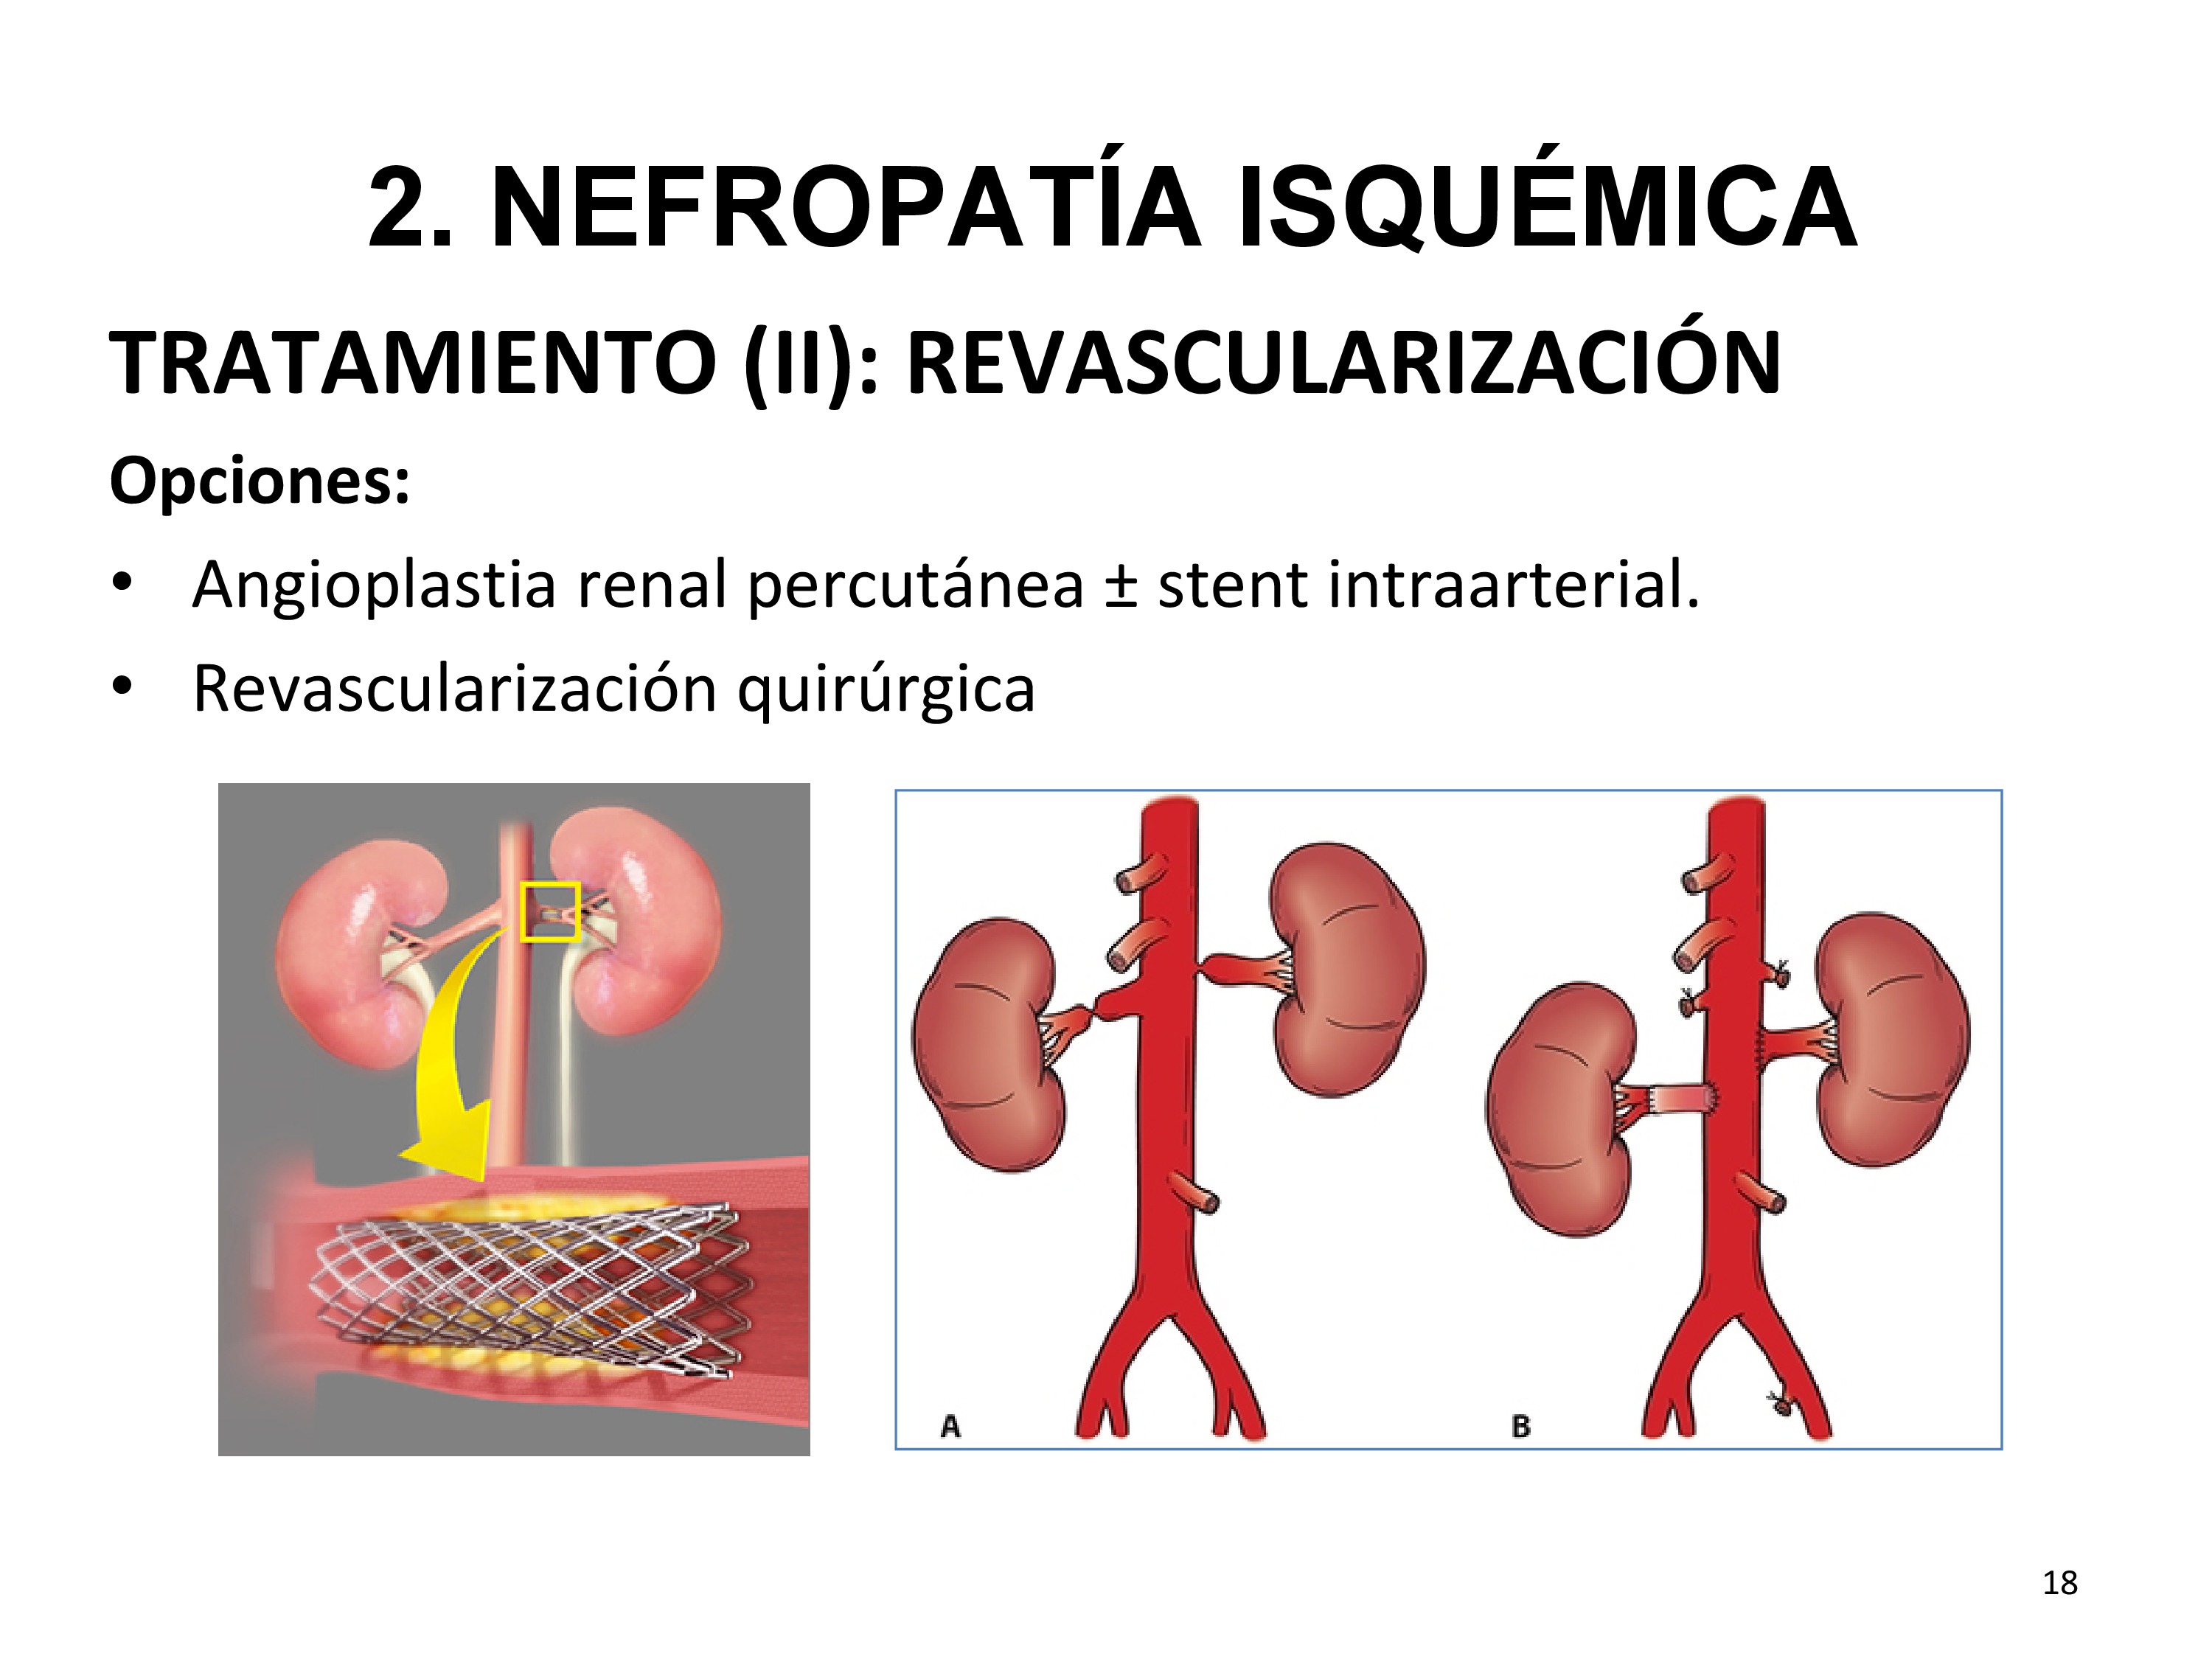 Las opciones de tratamiento revascularizador son:

Angioplastia renal percutánea, generalmente con colocación de stent (más usado, mejor resultado que sin stent).
Revascularización quirúrgica (bypass de la arteria renal desde la aorta o bypass hepatorrenal o esplenorrenal que evita una aorta enferma . Se usa principalmente para la corrección de lesiones vasculares complejas y /o episodios repetidos de reestenosis intra-stent).
